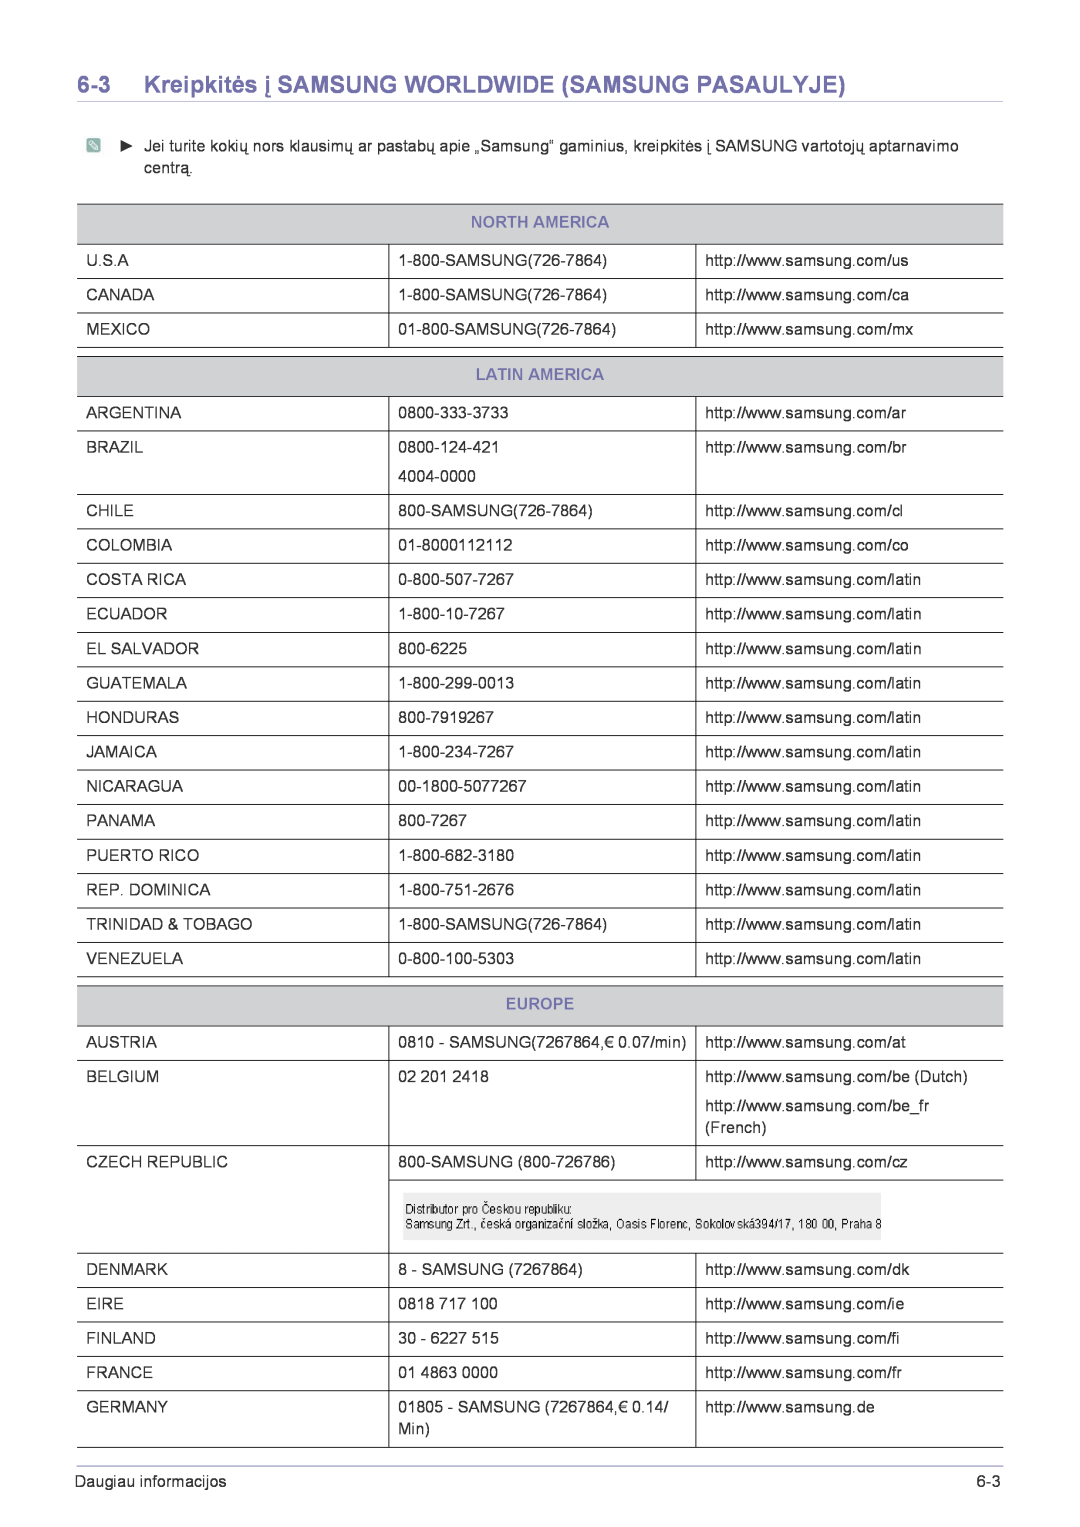 Samsung LS22FMDGF/EN manual Kreipkitės į SAMSUNG WORLDWIDE SAMSUNG PASAULYJE, North America, Latin America, Europe 